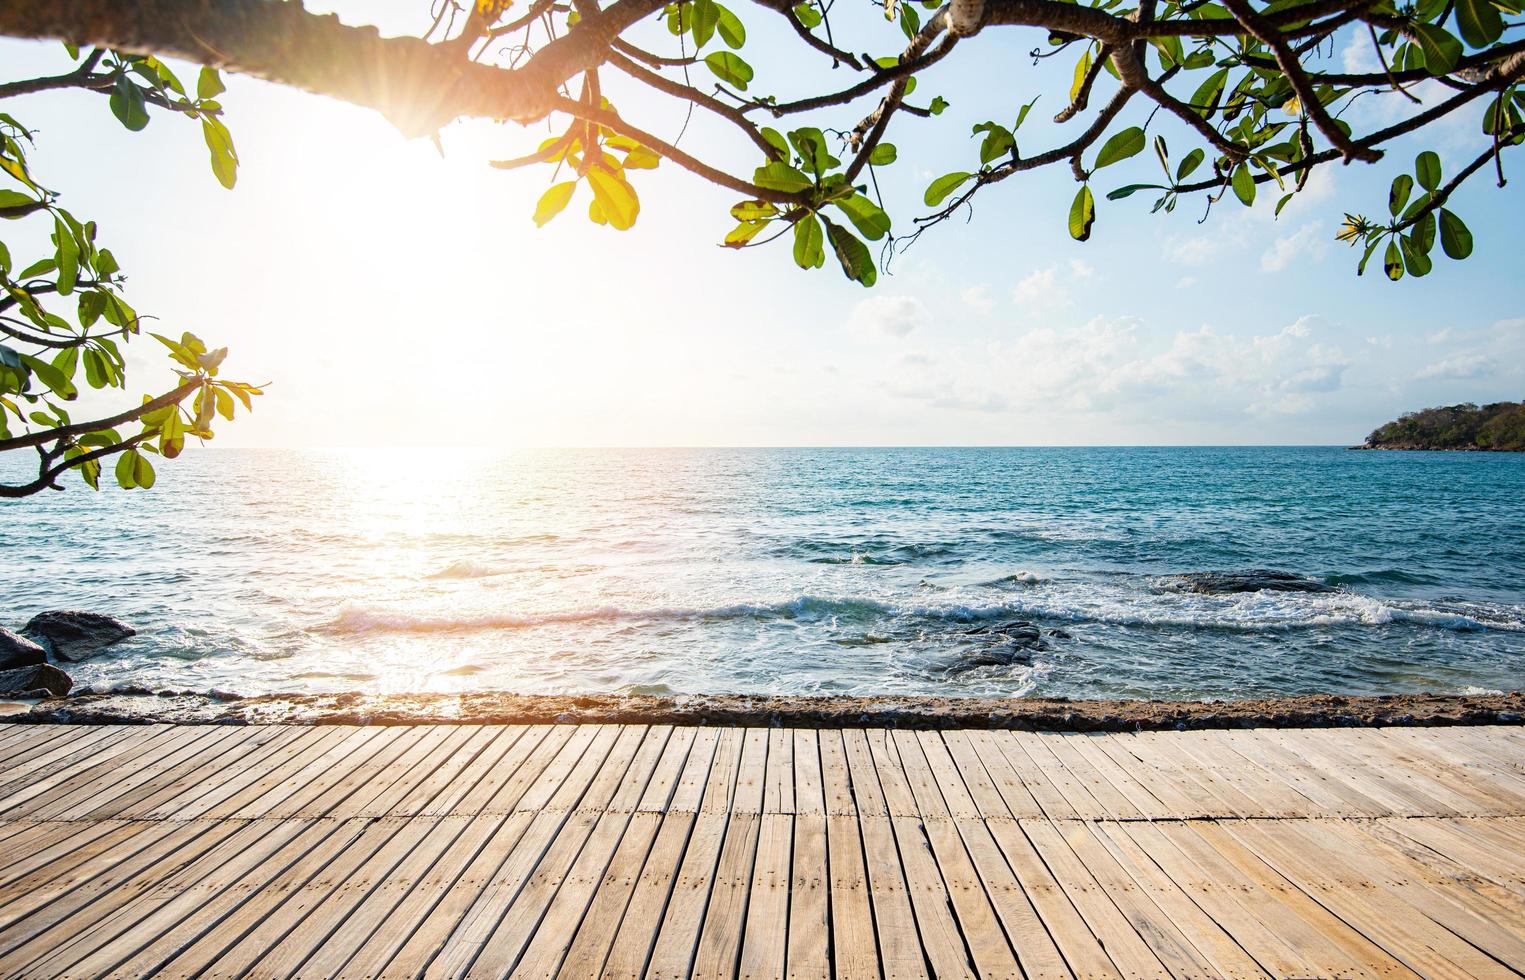 terraço vista mar com mesa de madeira vazia na praia paisagem natureza com pôr do sol ou nascer do sol - ponte de madeira varanda vista mar idílico litoral silhueta árvore tropical férias de verão praia foto